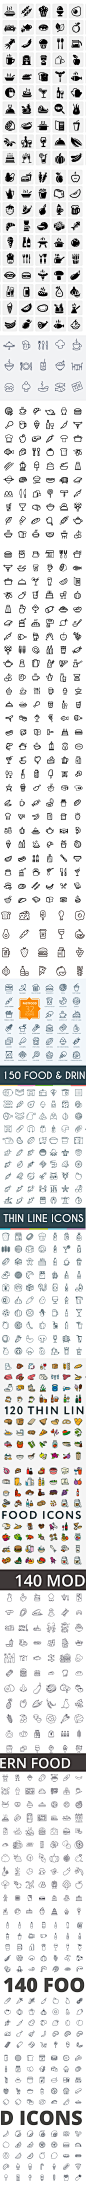 美食餐饮西餐海鲜食材手机APP软件网页UI界面图标设计矢量素材图